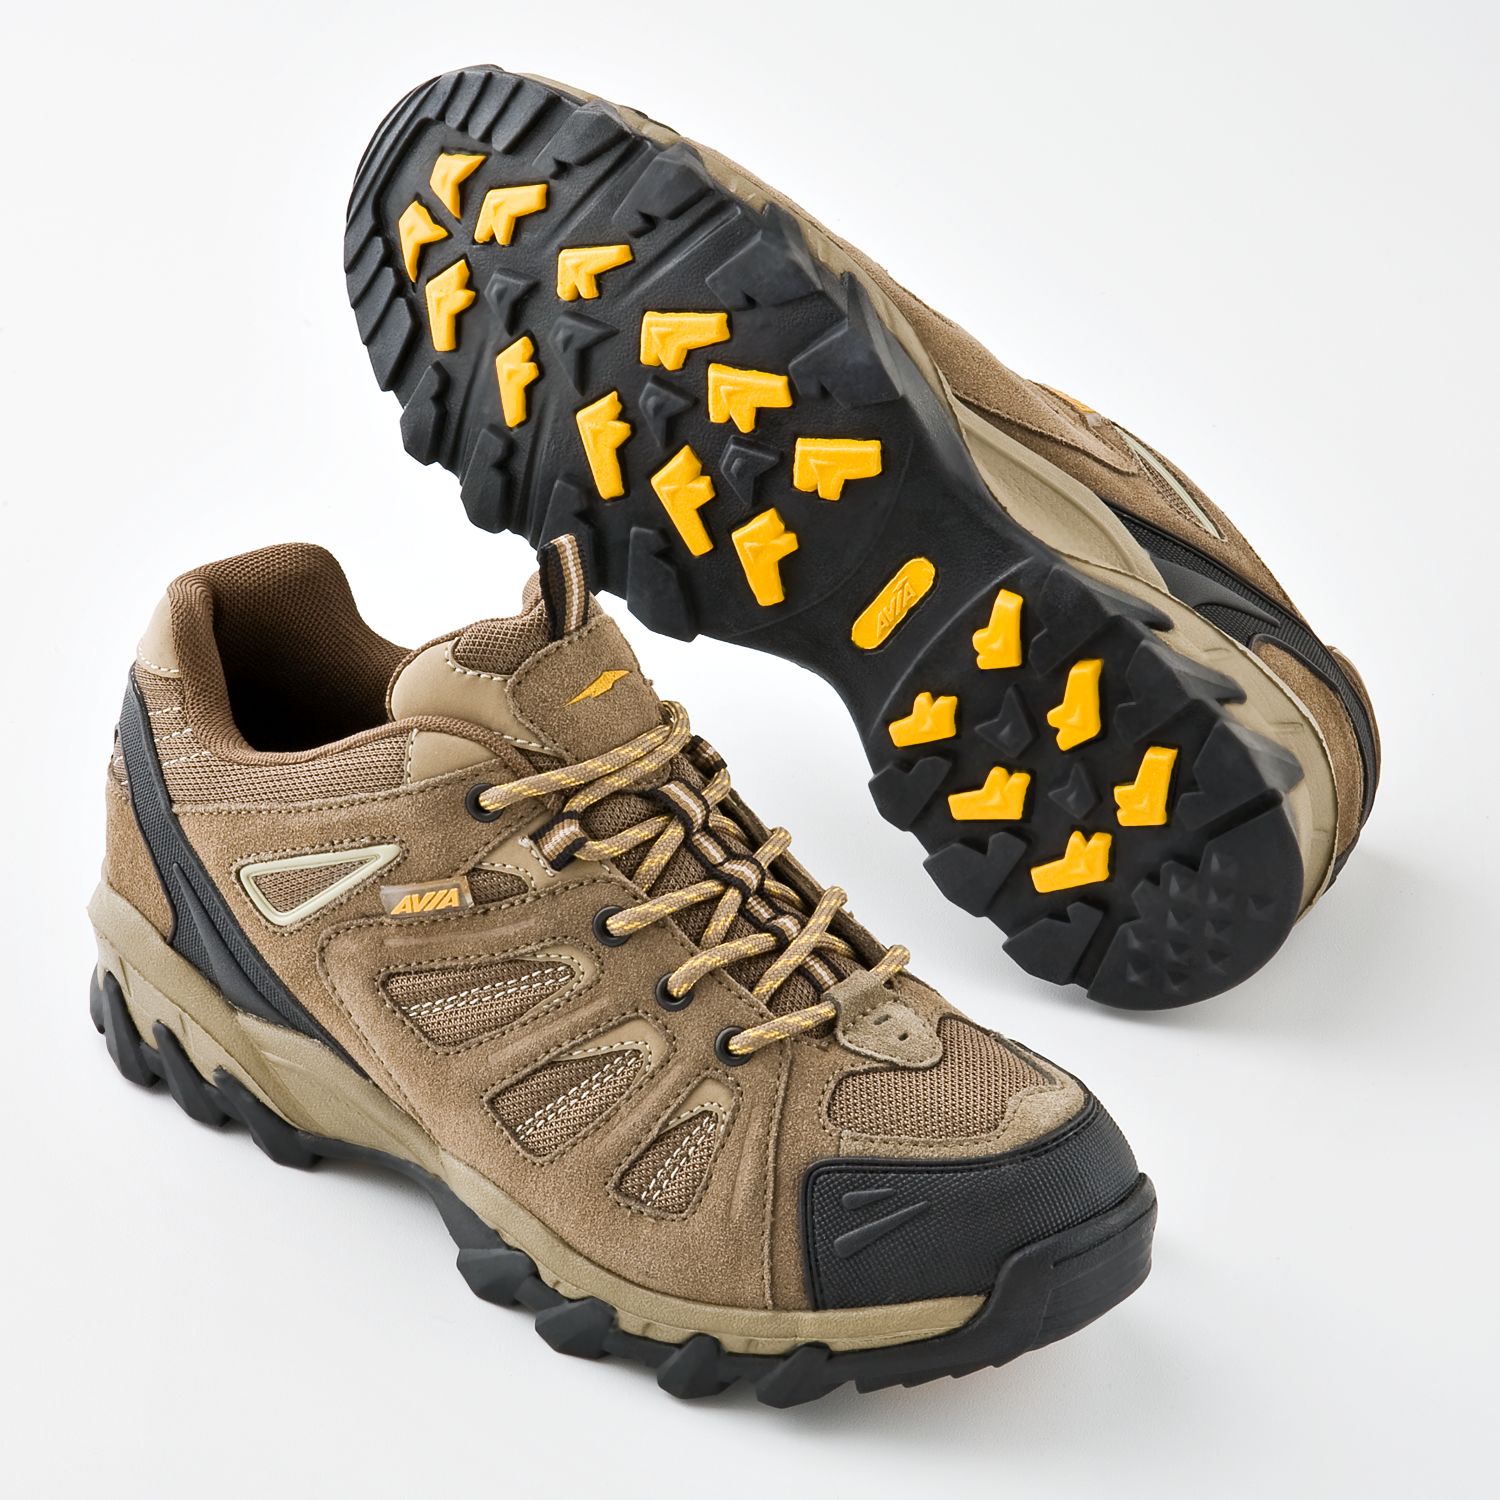 Avia 6079 Hiking Shoes - Men